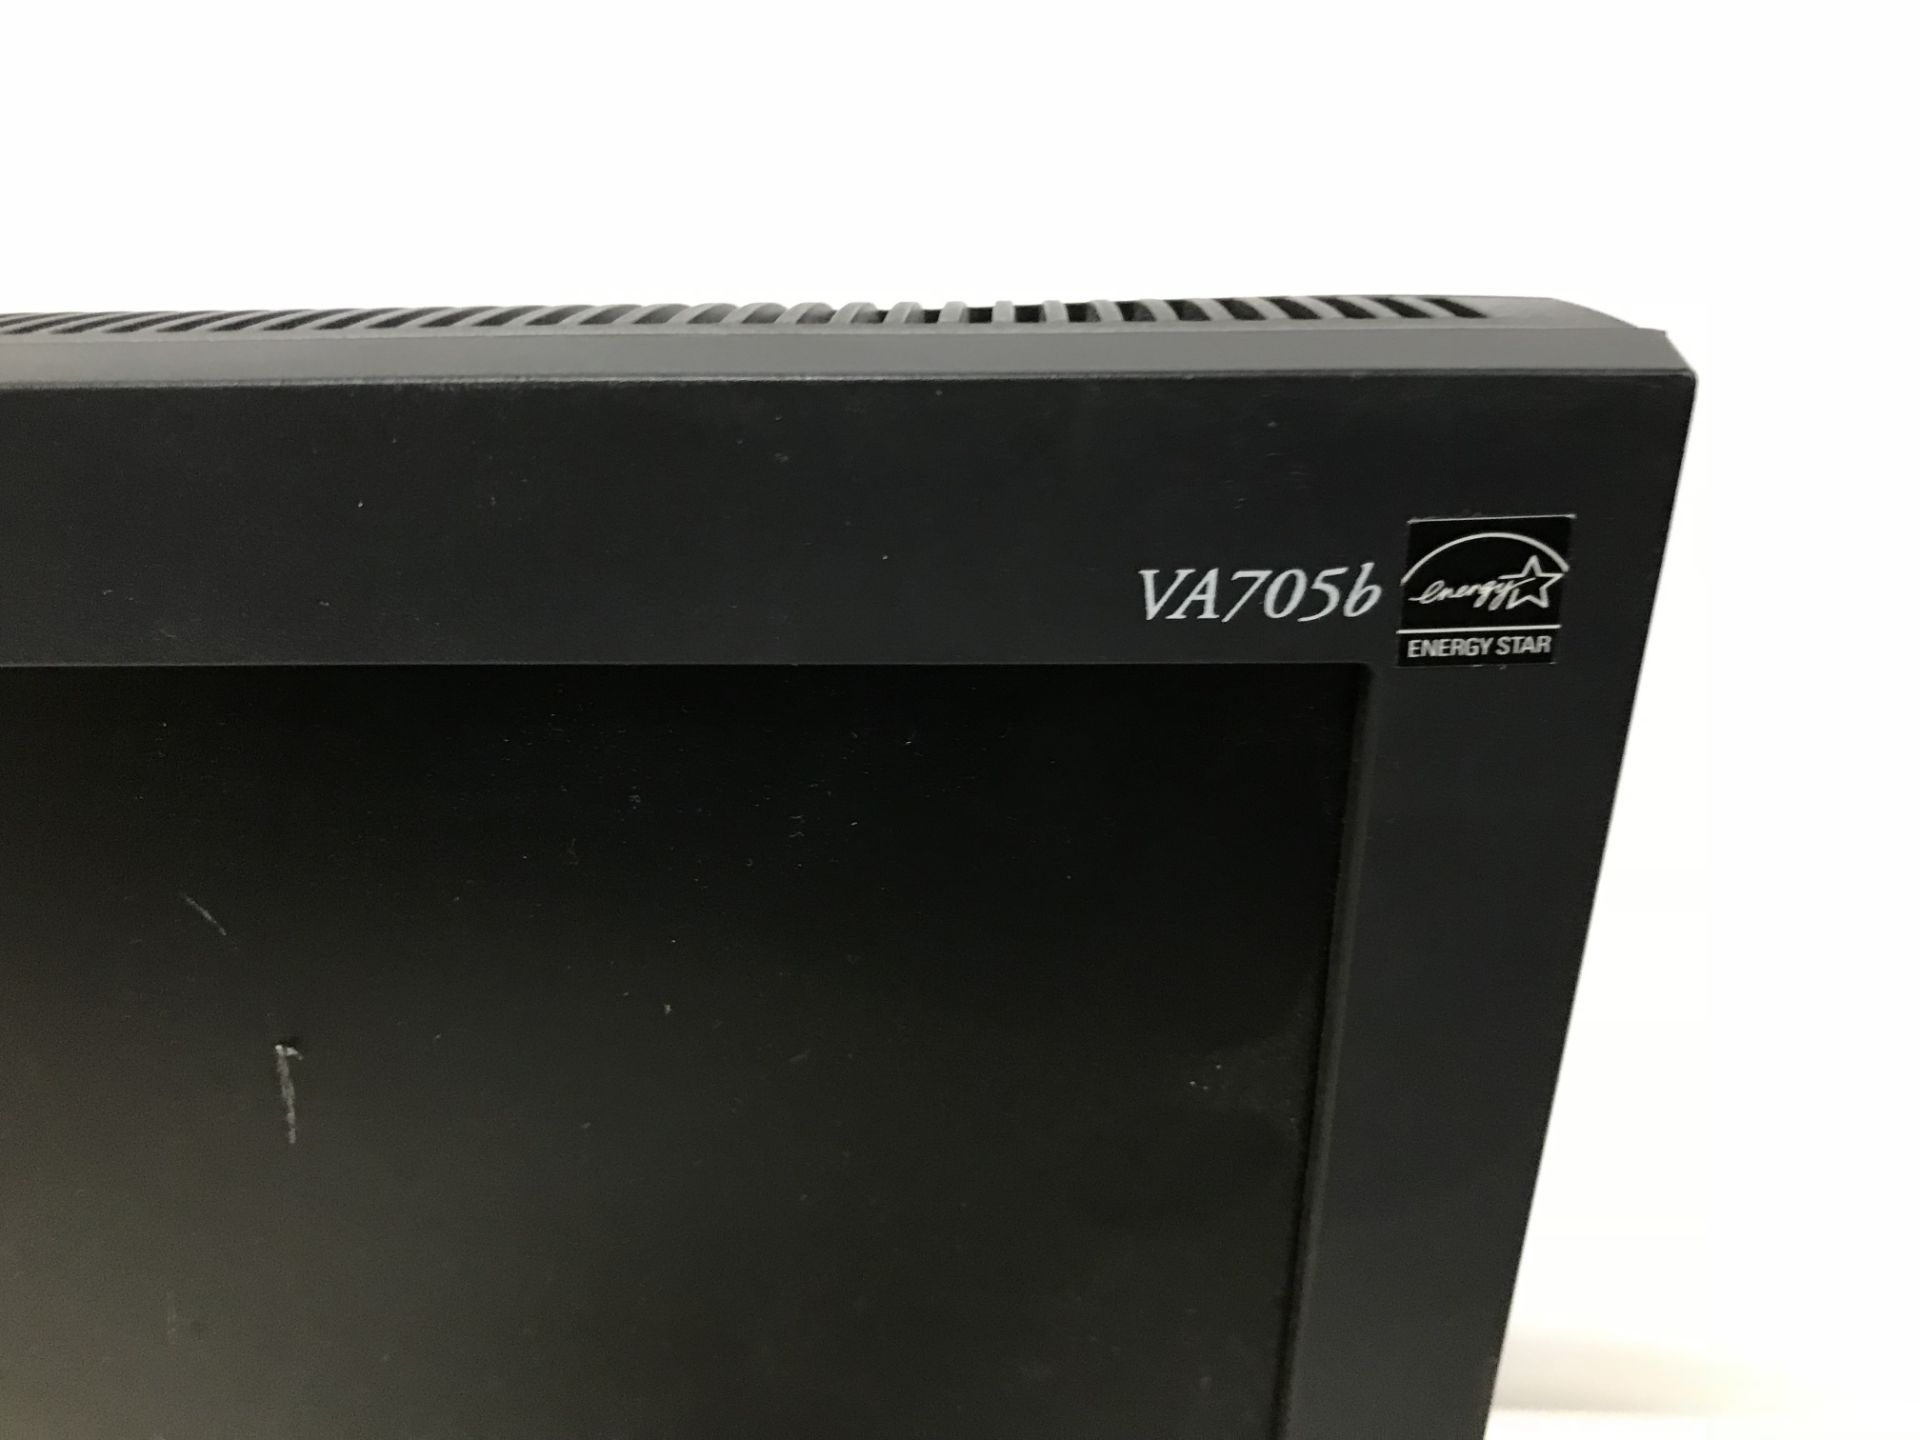 10 x Viewsonic VA705B Computer Monitors - Image 2 of 2